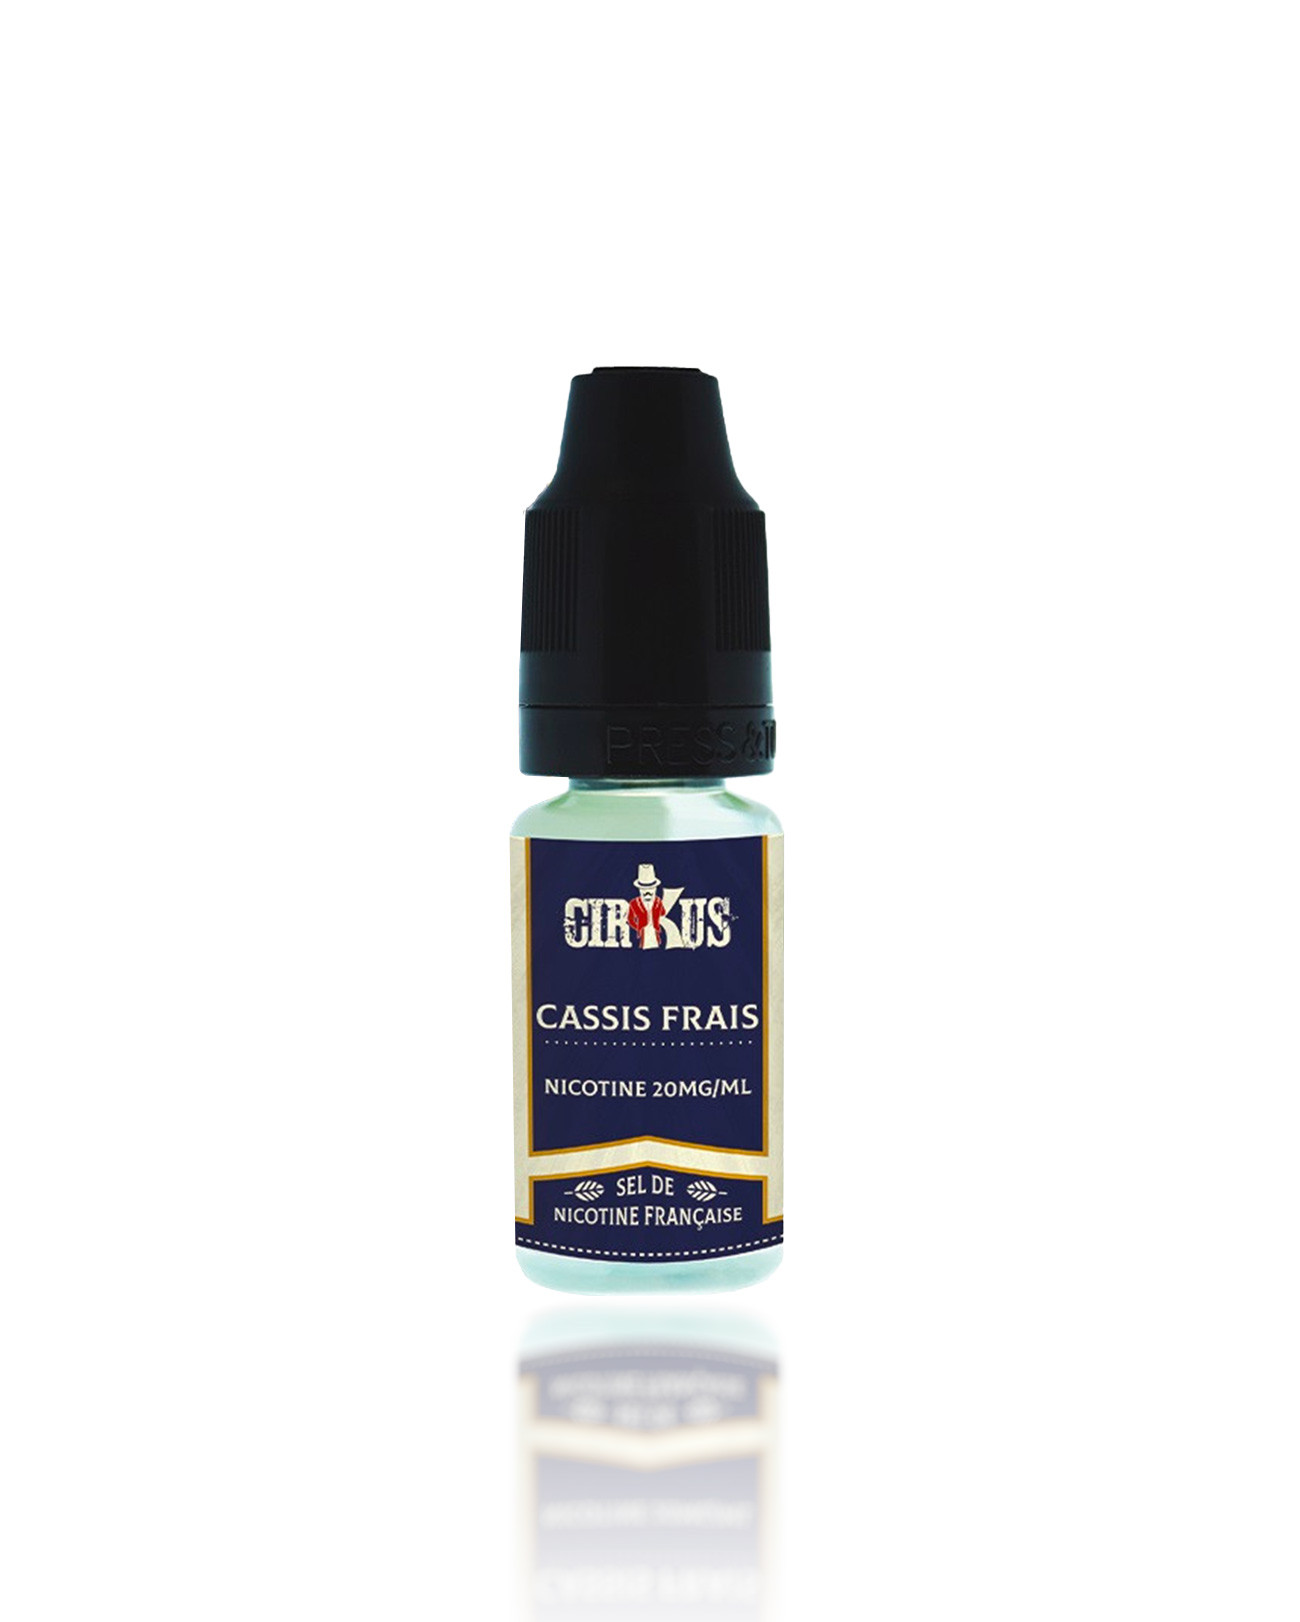 E-liquide sel de nicotine 20mg Cassis Frais Cirkus de VDLV fruité, frais et savoureux